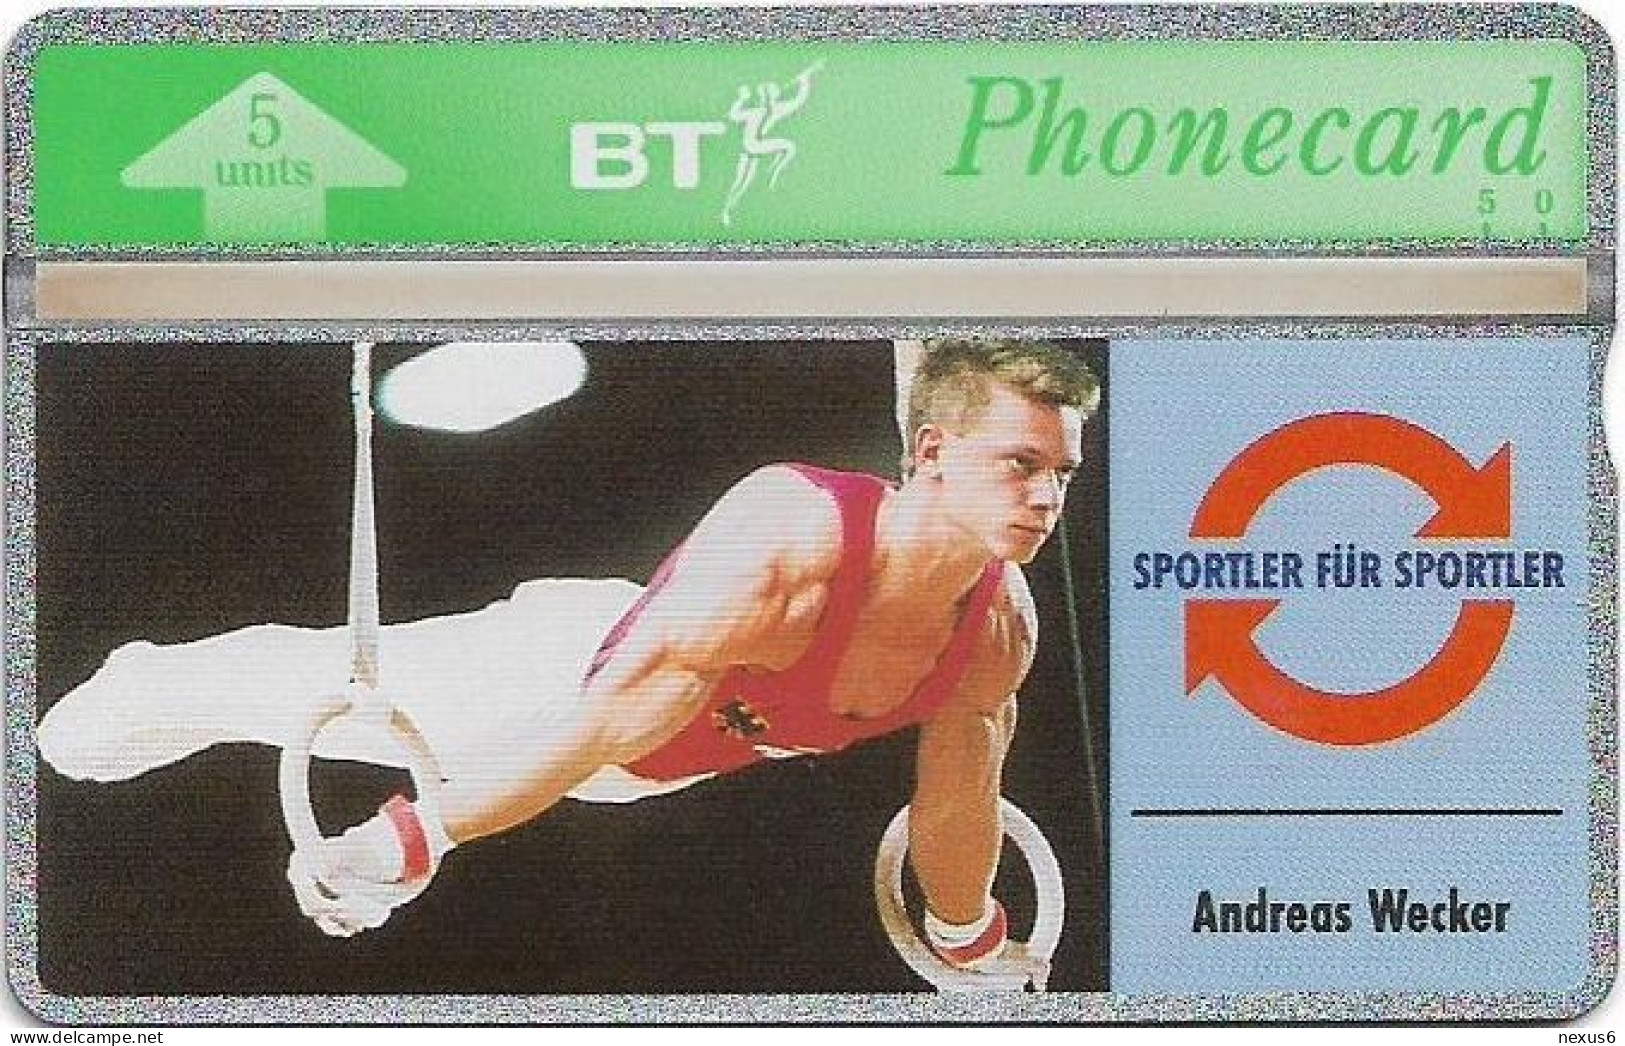 UK - BT - L&G - BTO-051 - Sports Series #6, Andreas Wecker - 308G - 1993, 5U, 5.000ex, Mint - BT Übersee